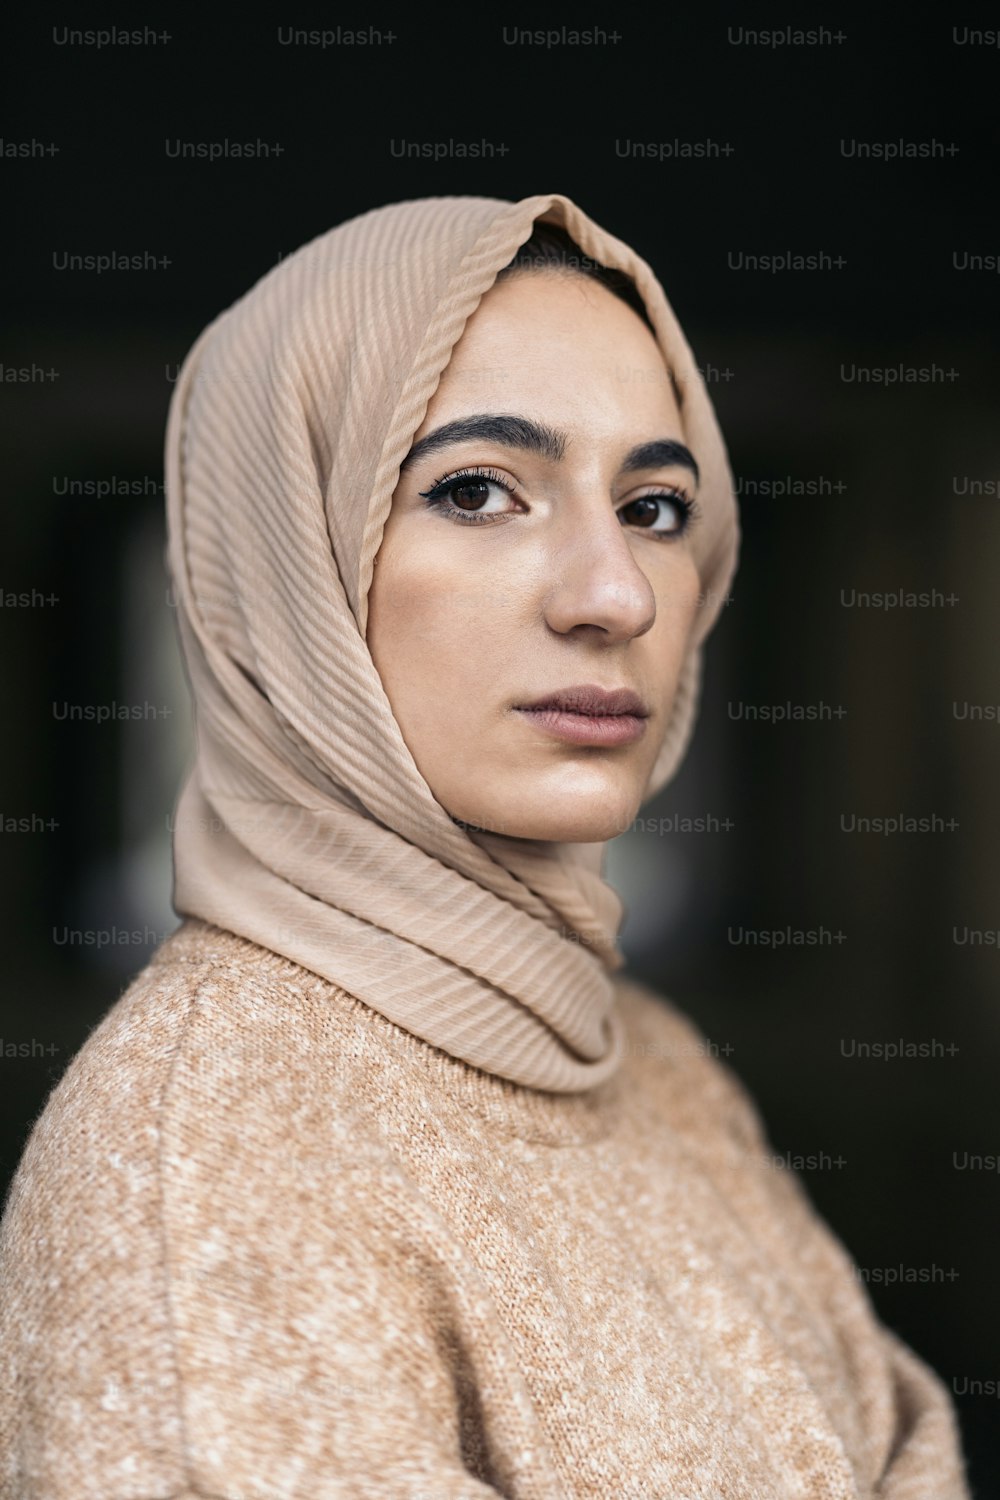 Beautiful young muslim woman wearing hijab looking at camera outdoors.